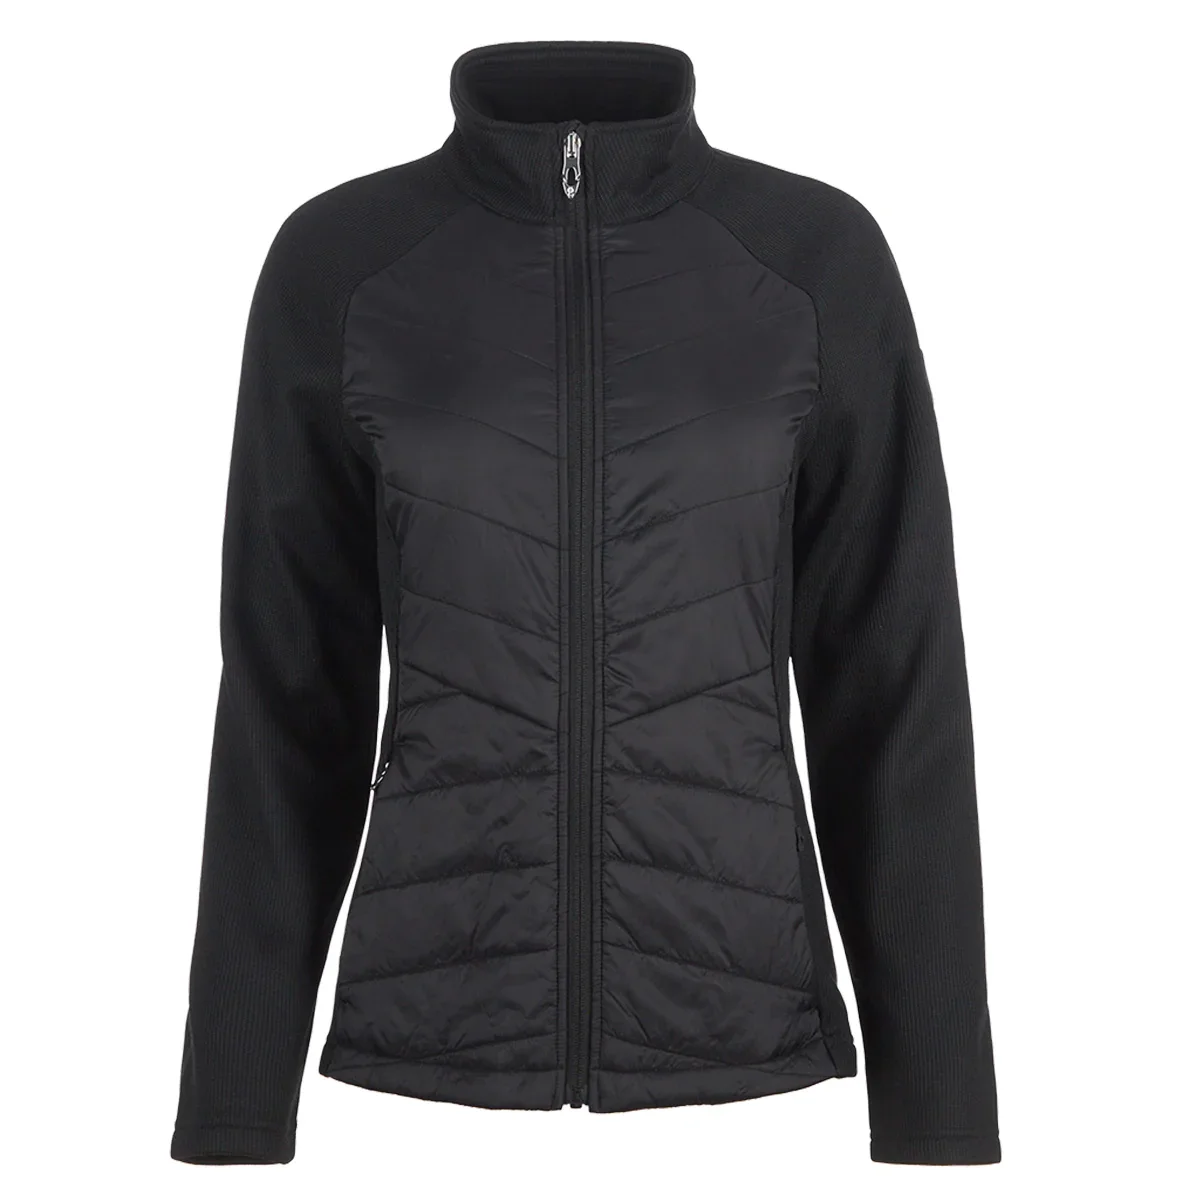 Image of Spyder Women's Nova Full Zip Hybrid Jacket